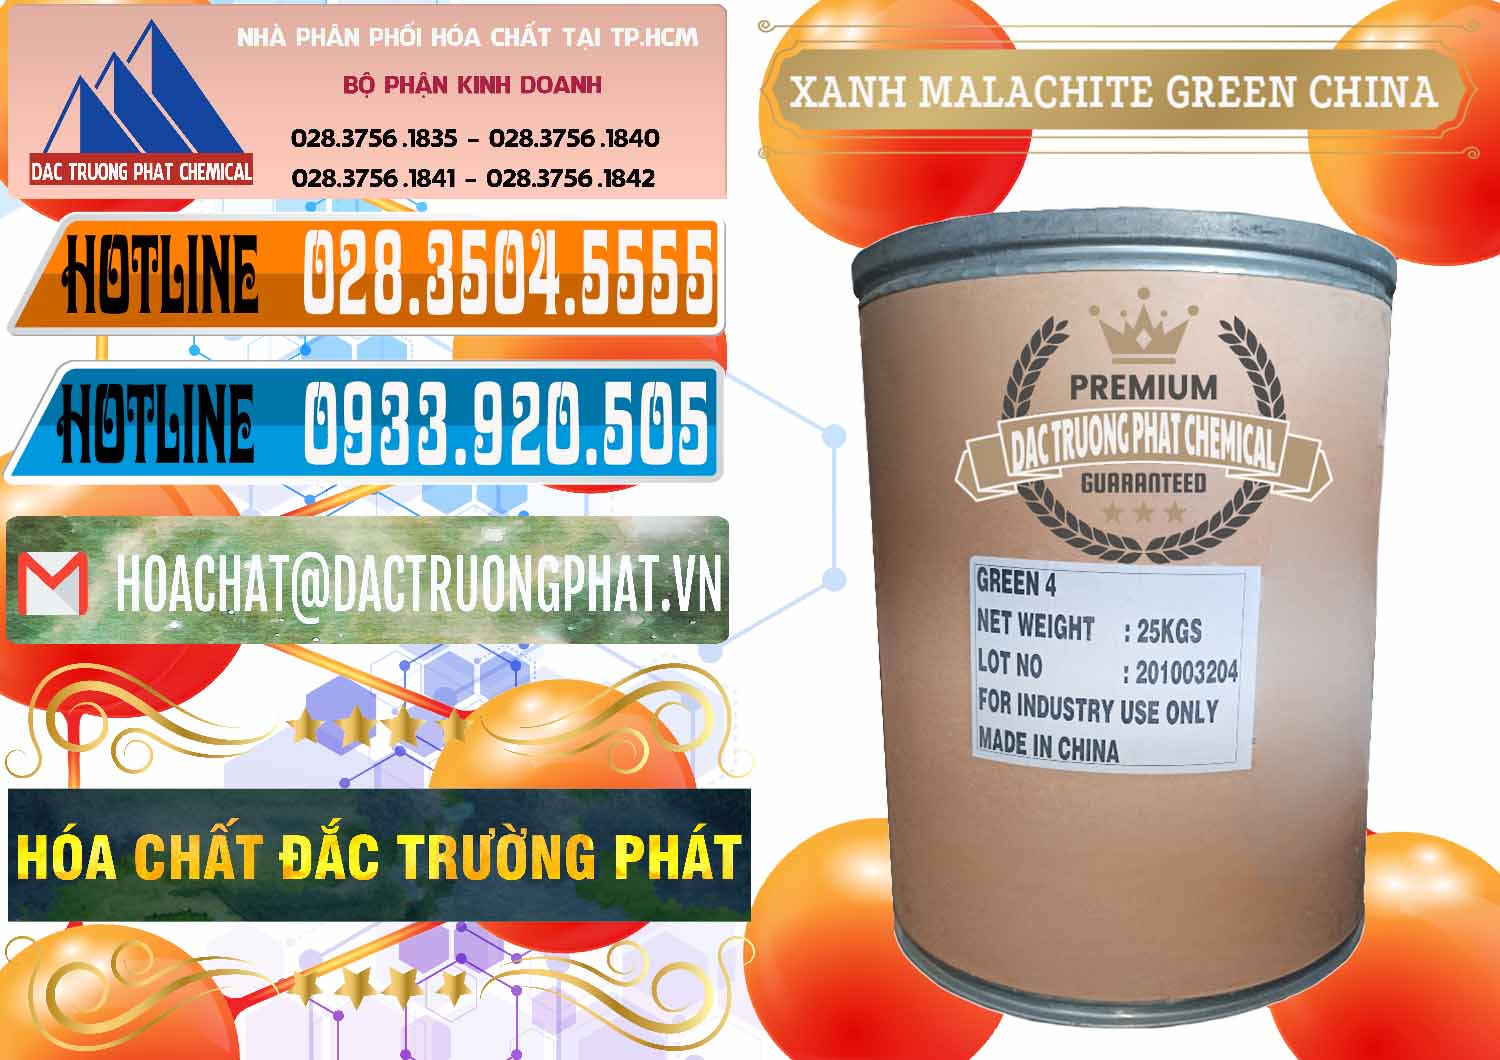 Nhập khẩu và bán Xanh Malachite Green Trung Quốc China - 0325 - Công ty chuyên nhập khẩu và cung cấp hóa chất tại TP.HCM - stmp.net